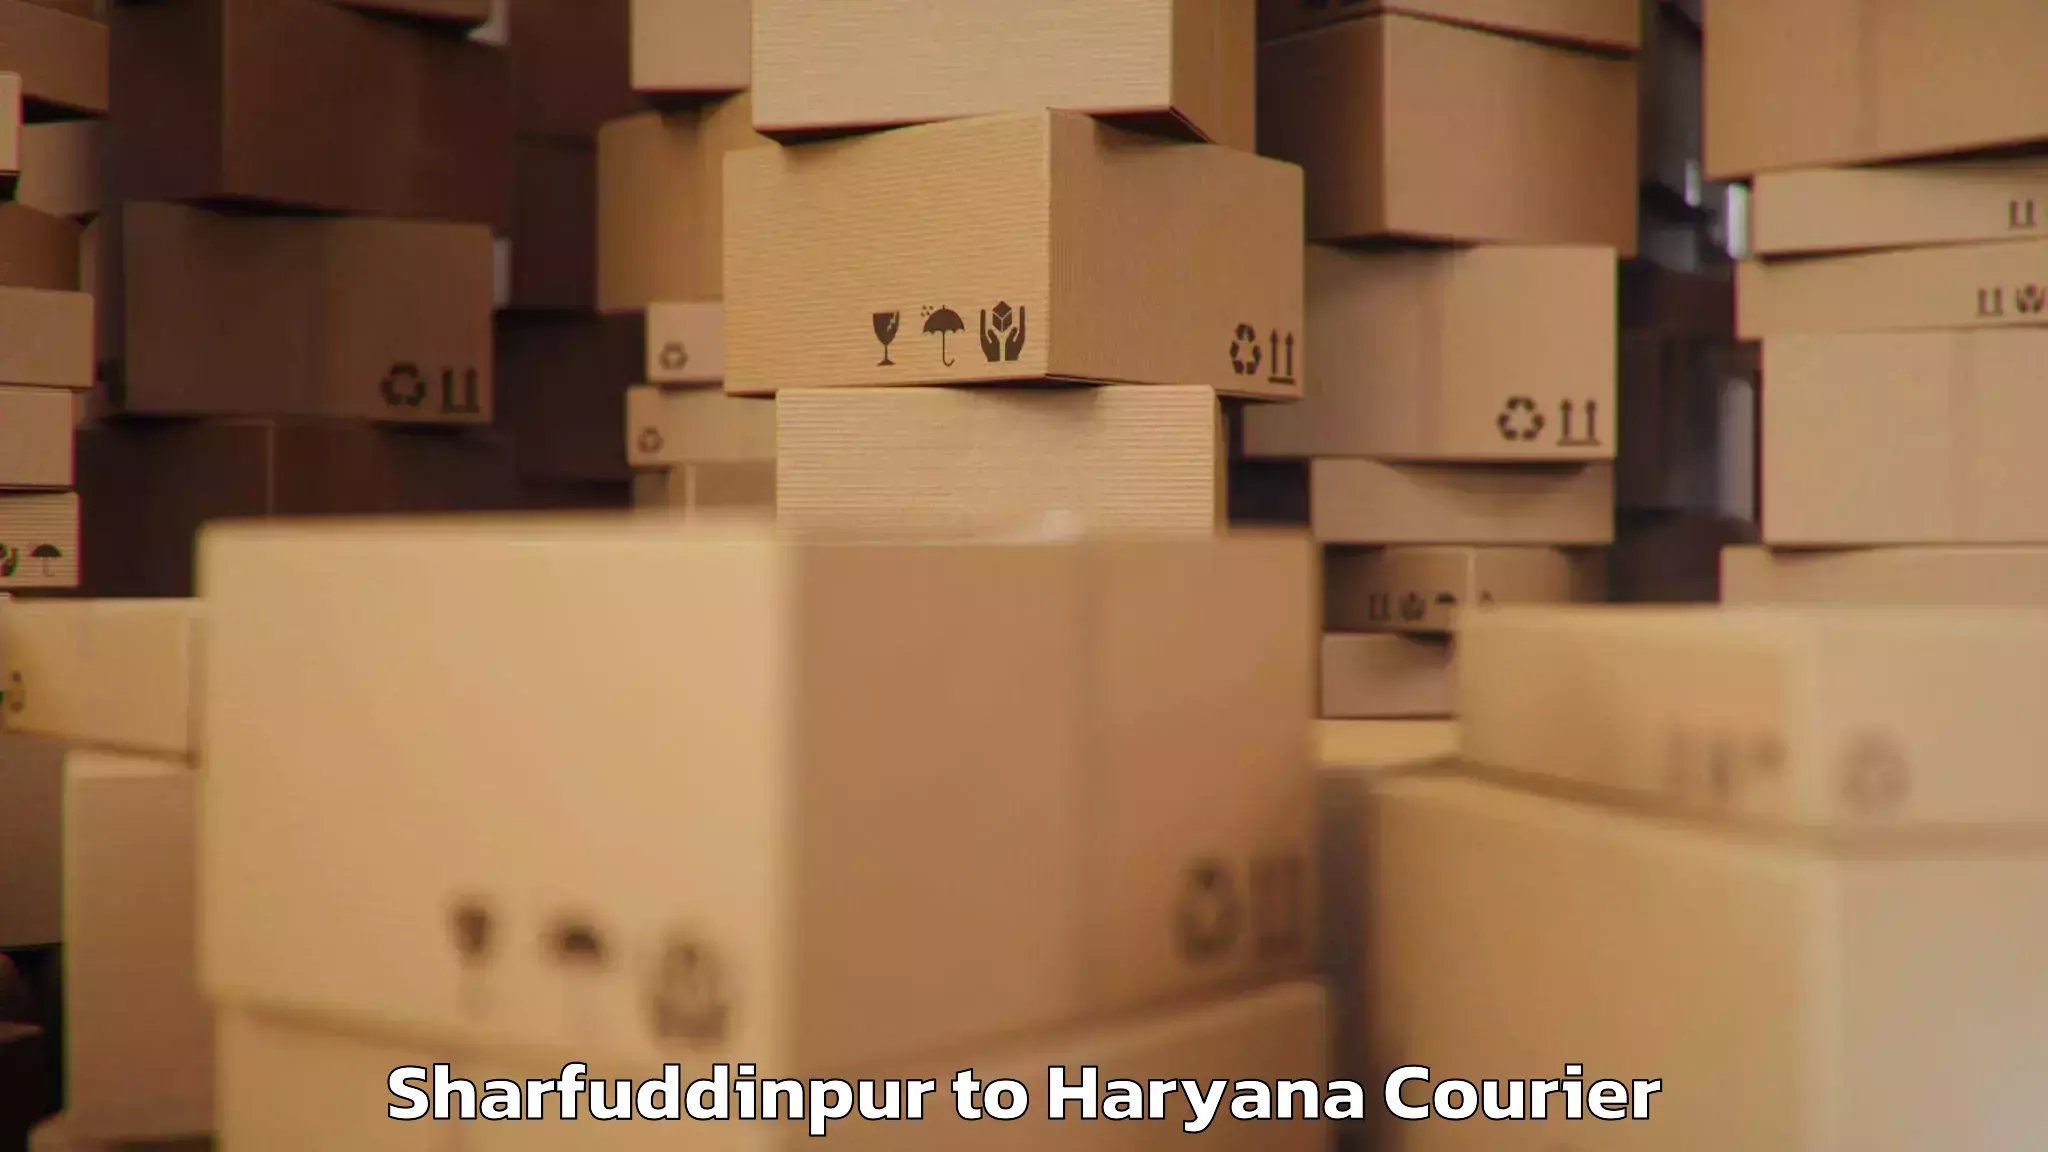 Luggage transport consultancy Sharfuddinpur to Kurukshetra University